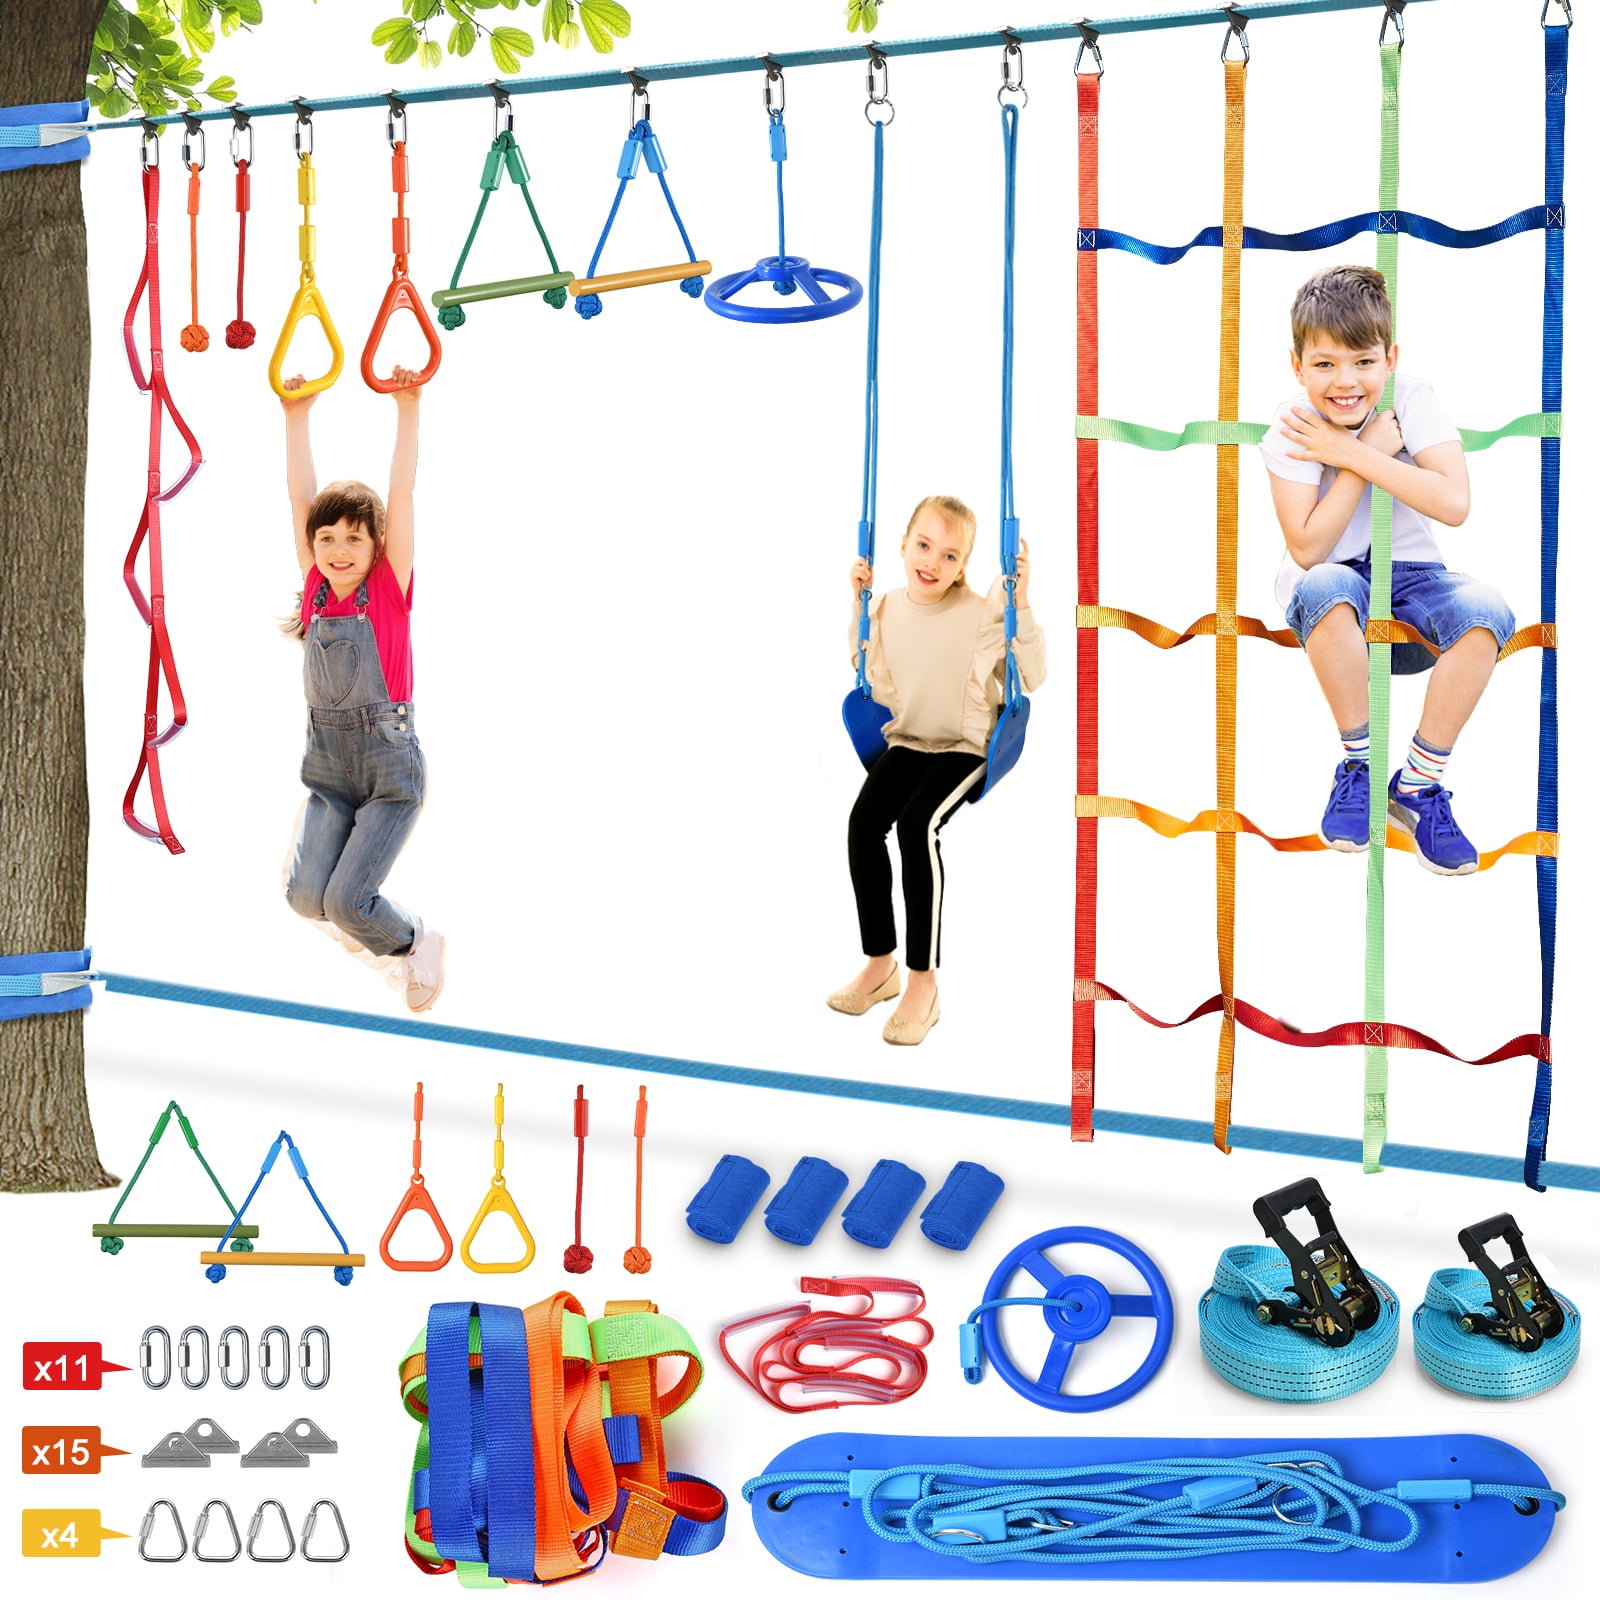 Ninja Warrior Monkey Bar Kit 59 Foot Kids Slackline Hanging Obstacle Course Set 